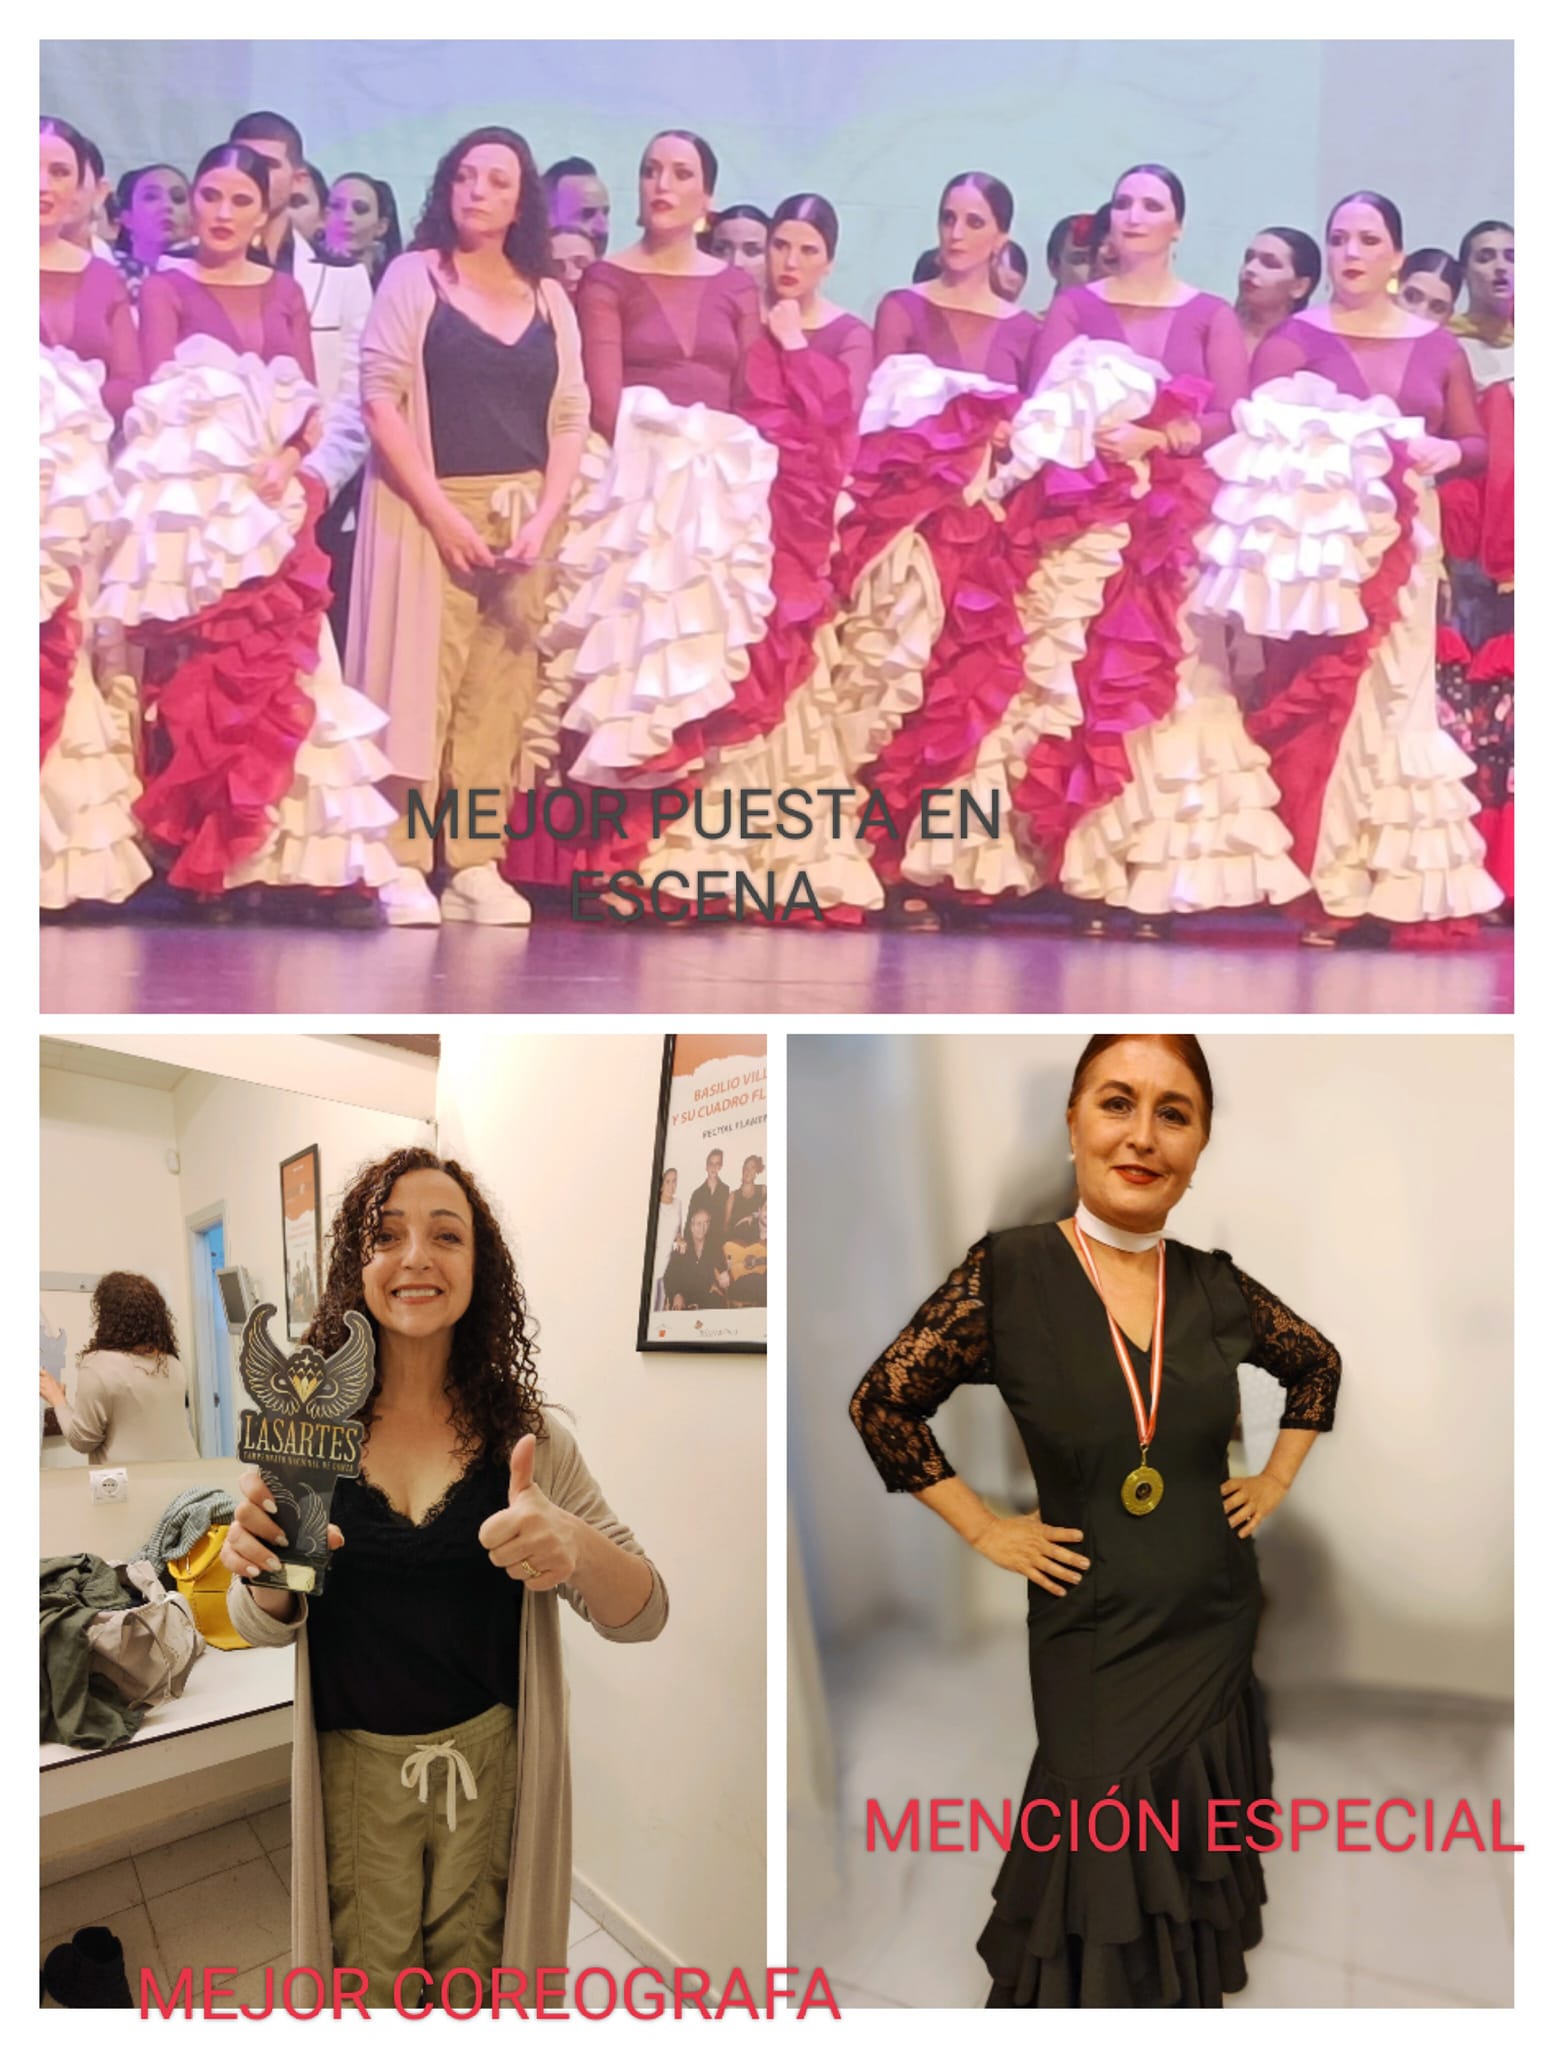 Campeonato Nacional de danza Lasartes 2023, Terpsícore premio a la mejor puesta en escena, Oro Blanco con mención especial a Emi Espárrago como bailarina, y premio a la mejor coreógrafa categoría sénior y debut de nuestro grupo Amalgama